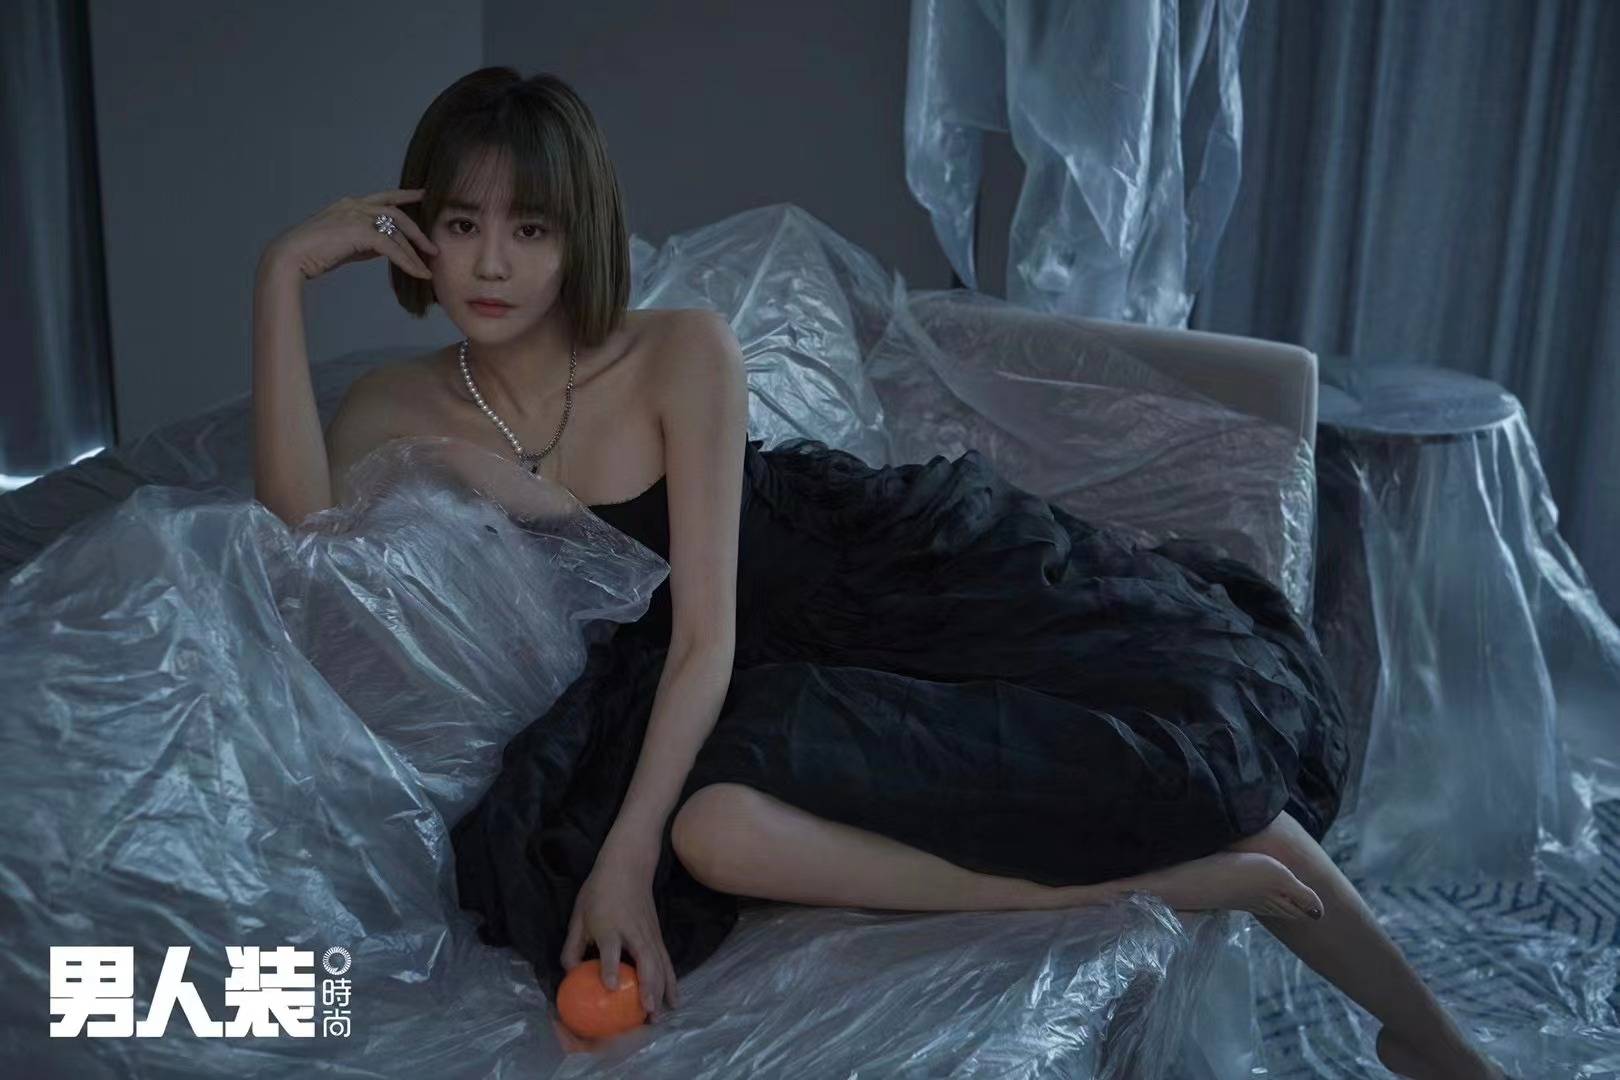 搜狐娱乐讯 9月21日,海陆一组绝美大片曝光,她身穿抹胸黑裙秀性感身材